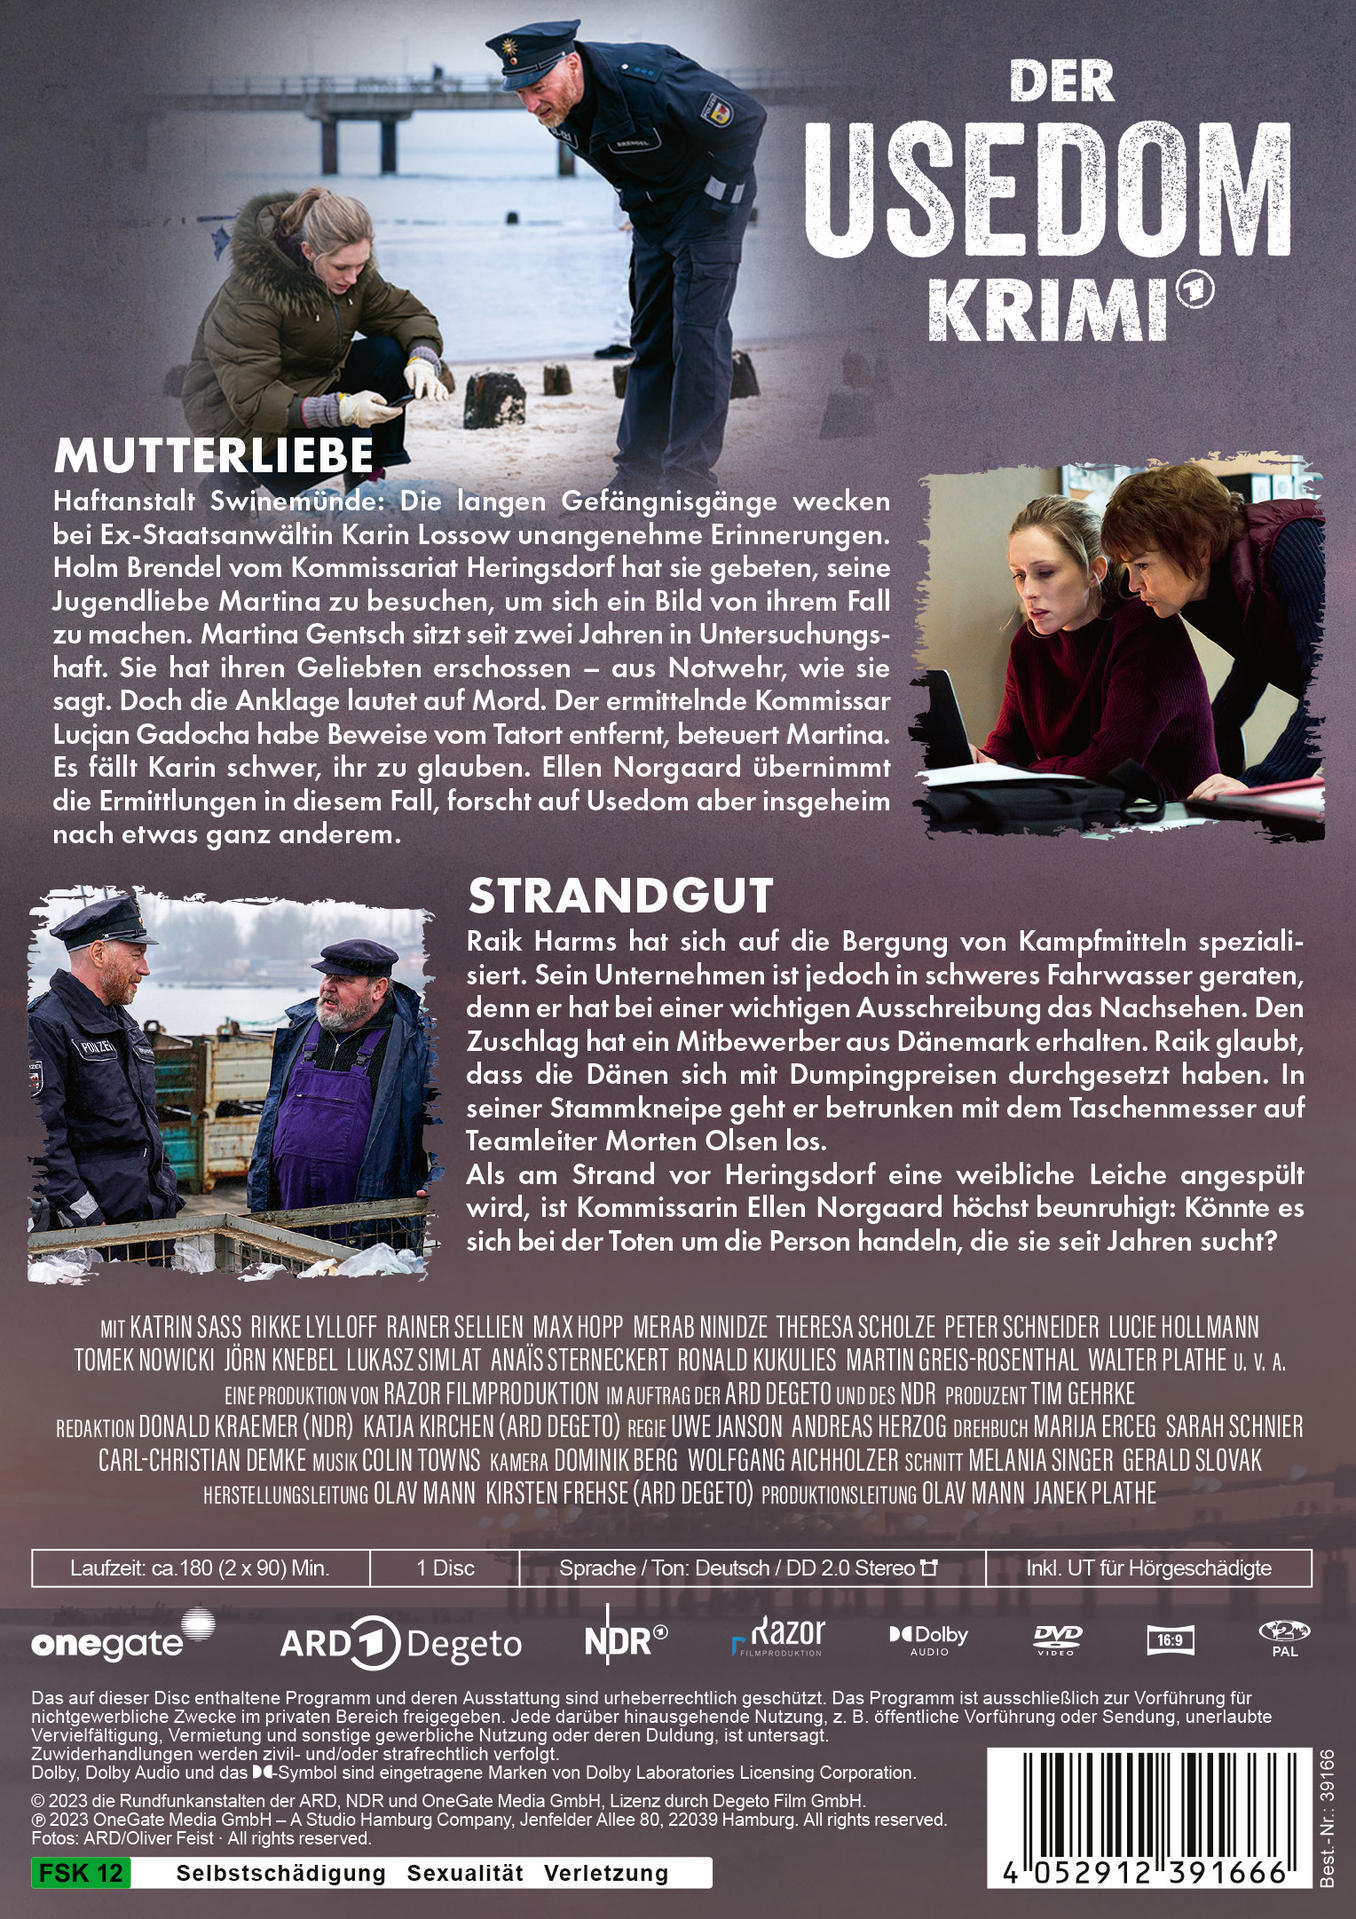 Der Usedom-Krimi: Mutterliebe / Strandgut DVD